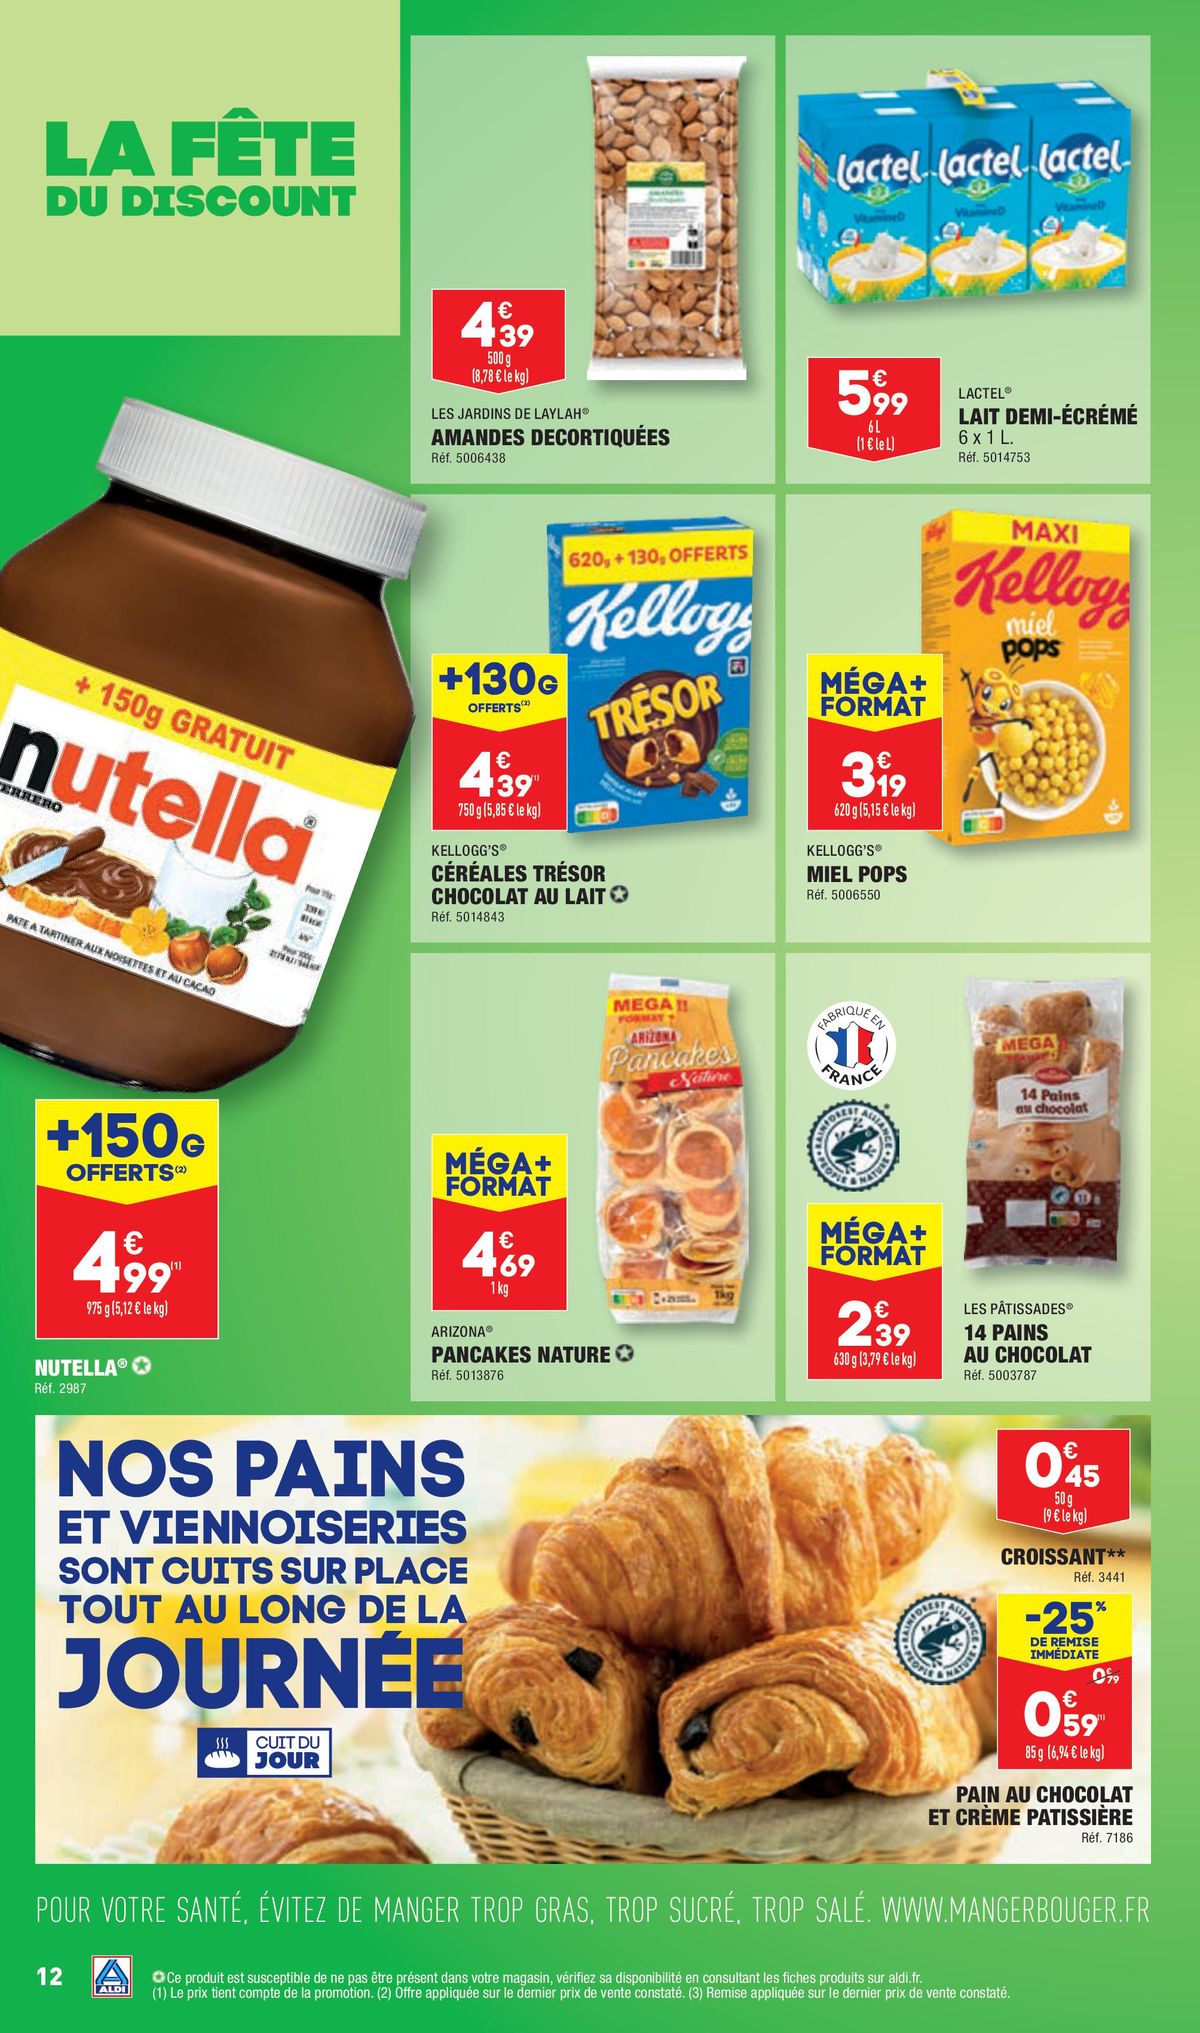 Catalogue La fête du discount - Dernière semaine, page 00012